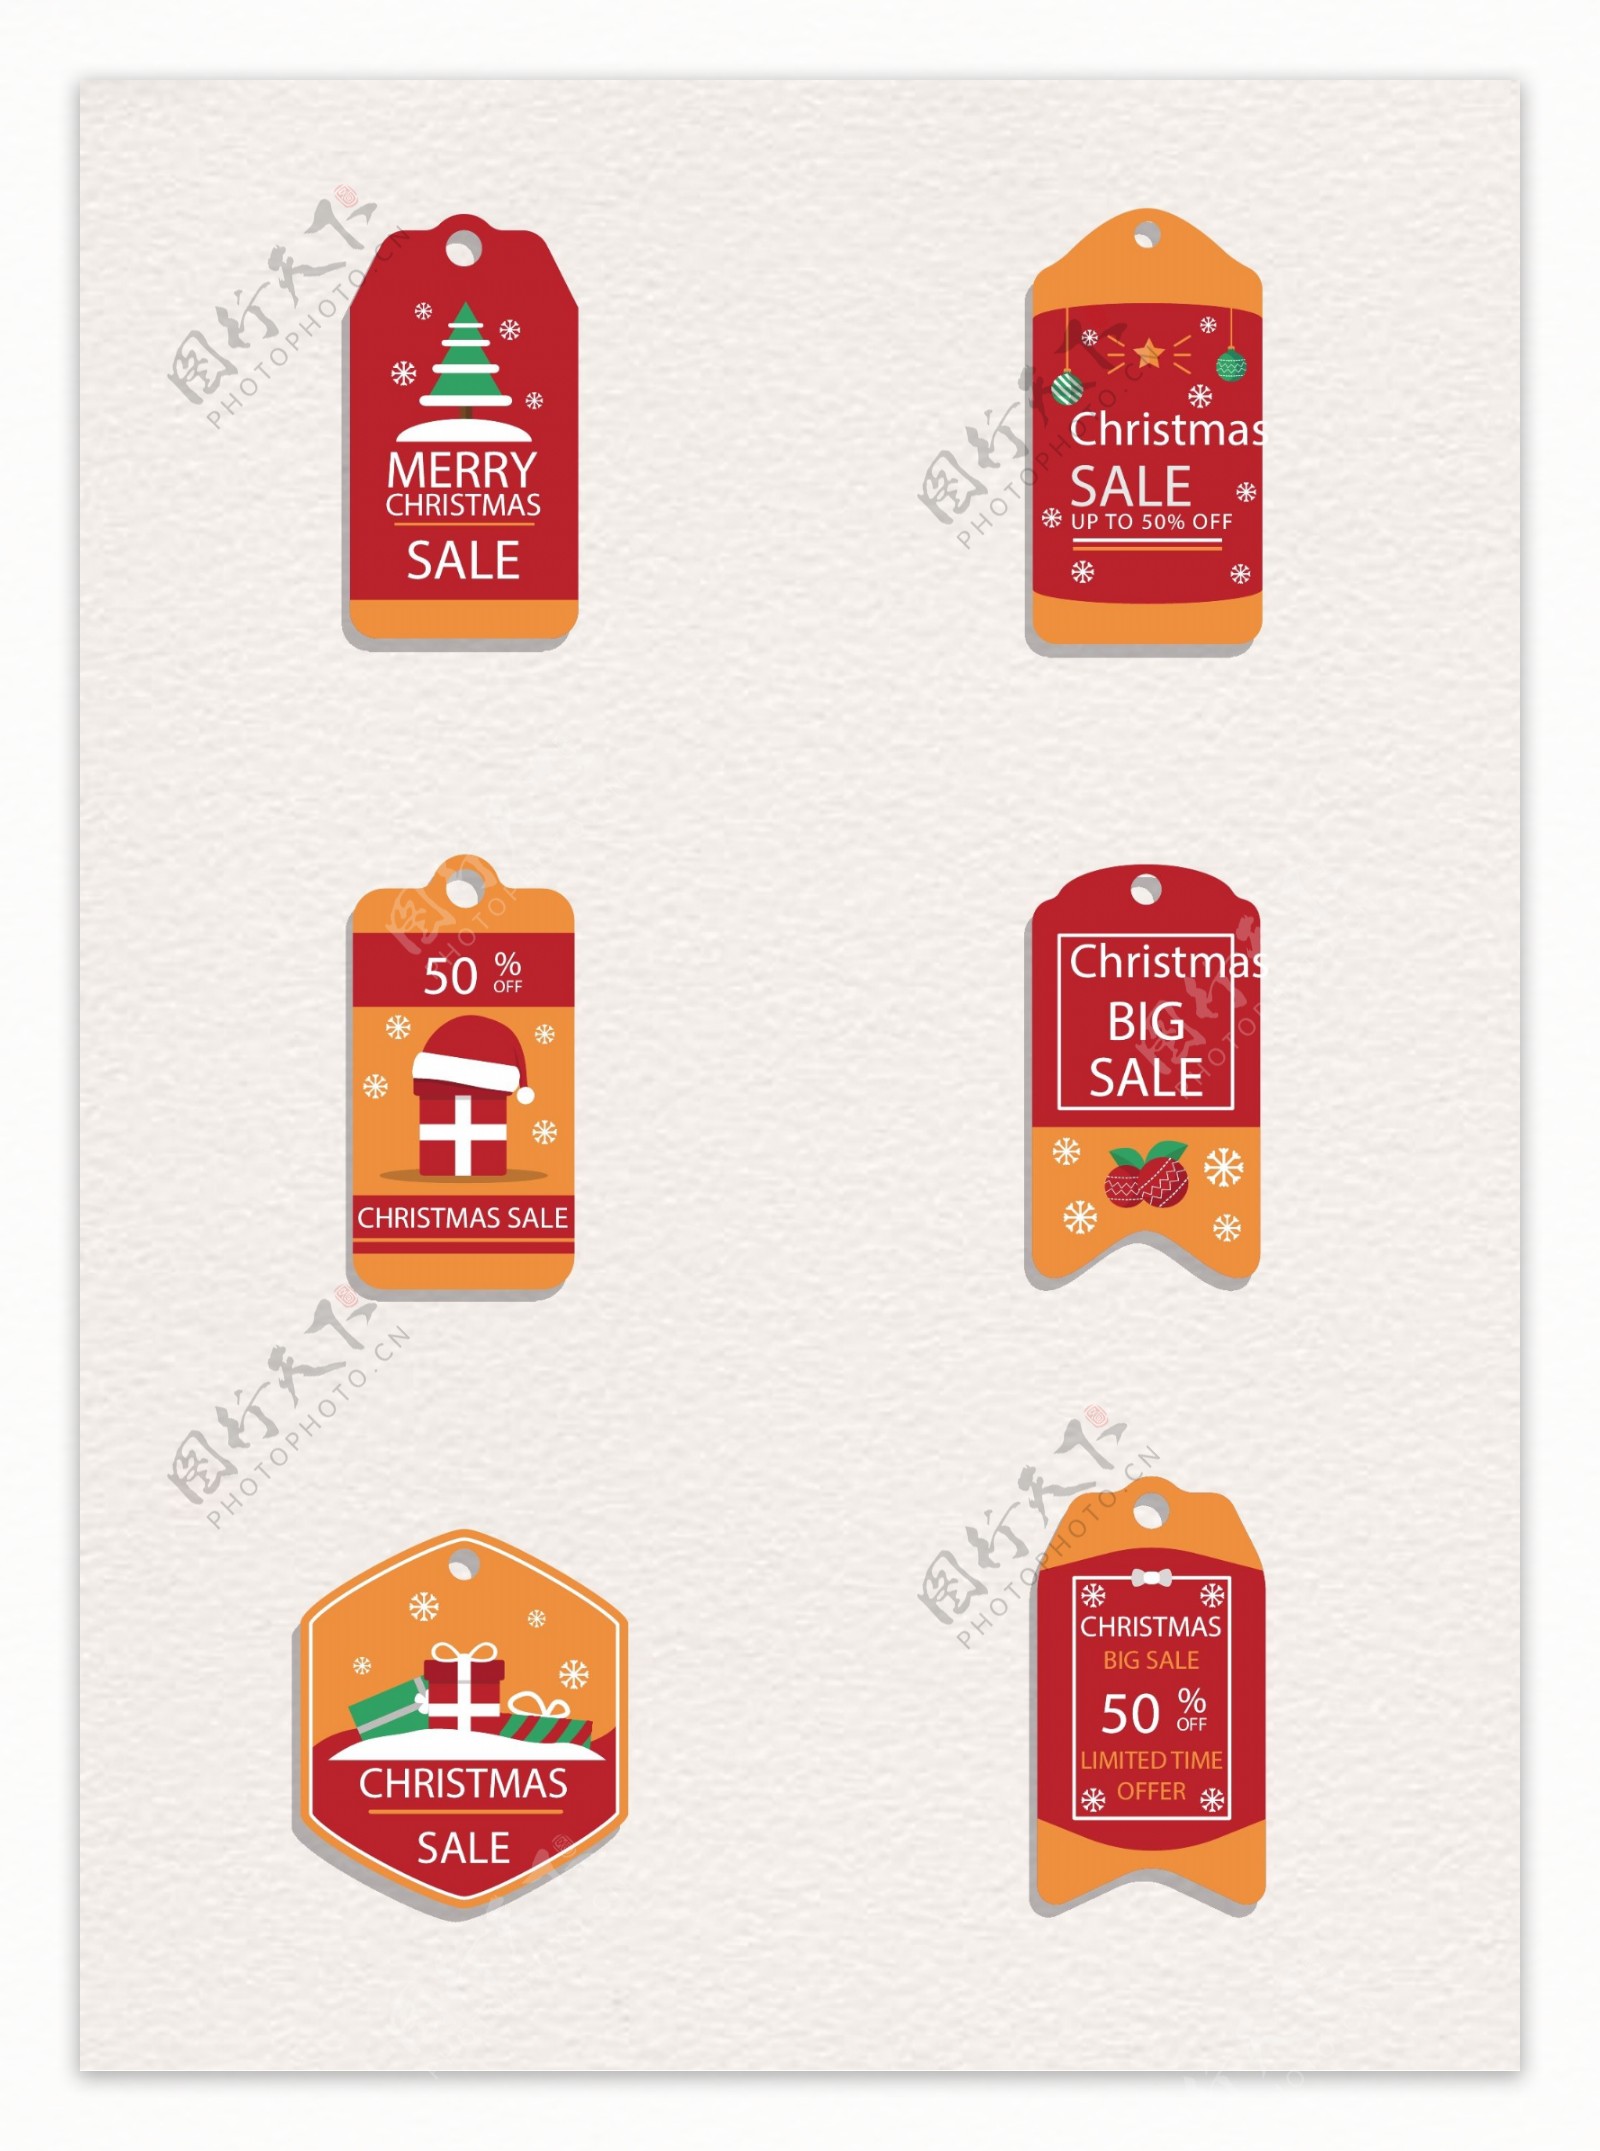 红色喜庆节日圣诞节促销标签元素